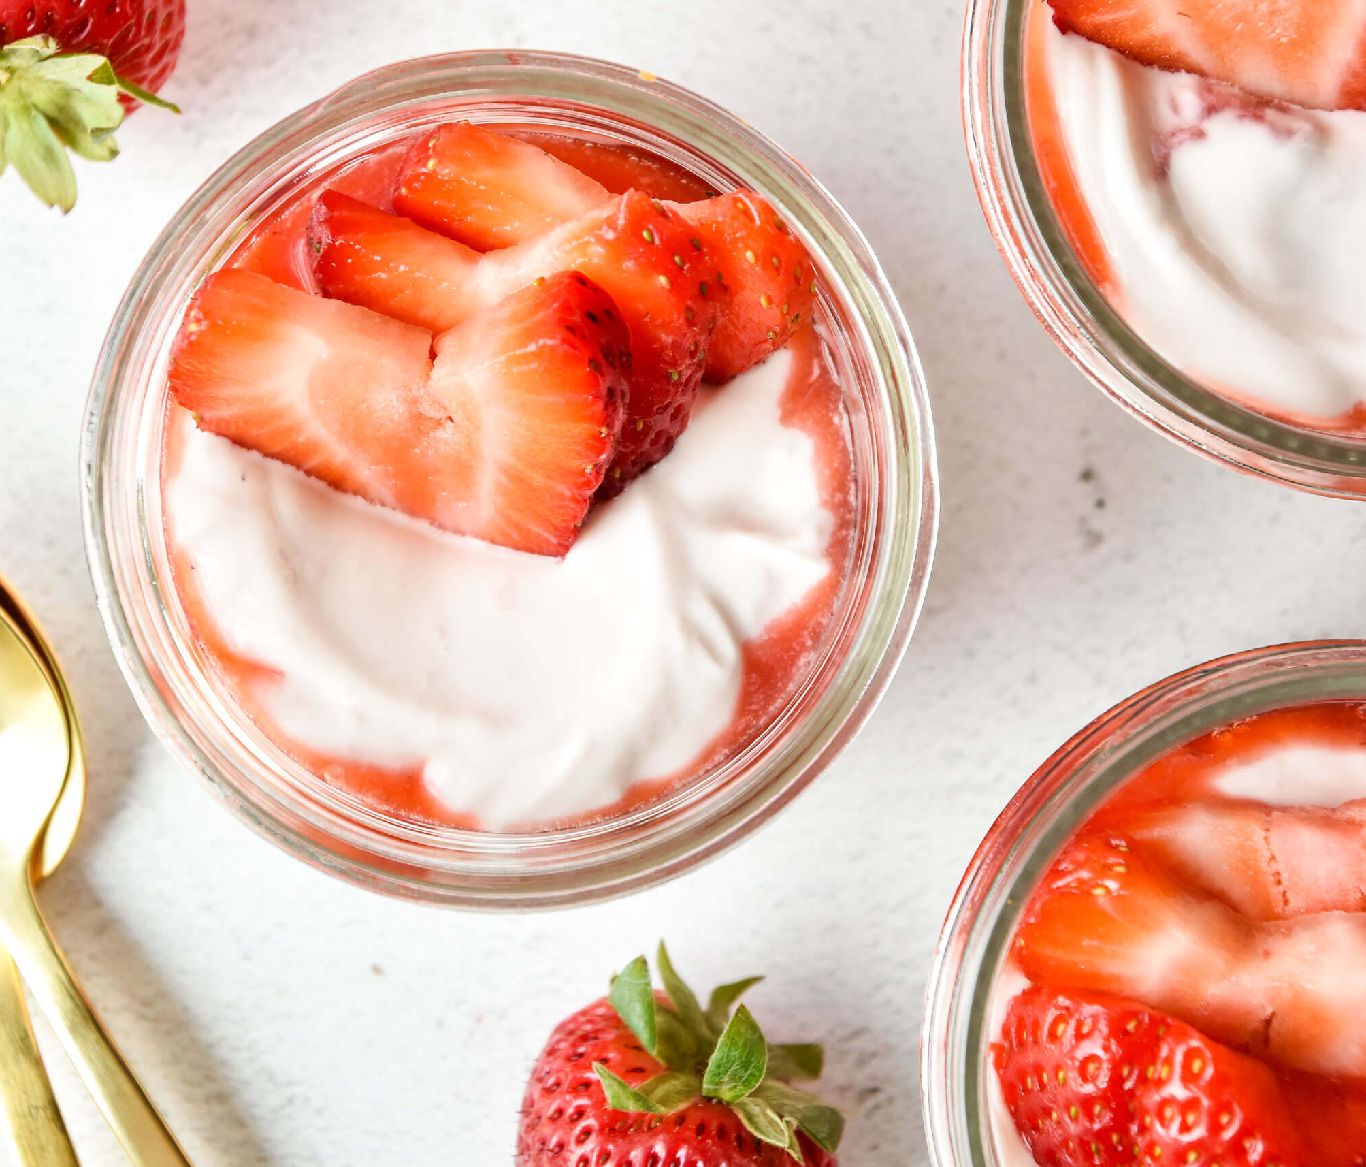 Strawberries And Yogurt Whipped Cream